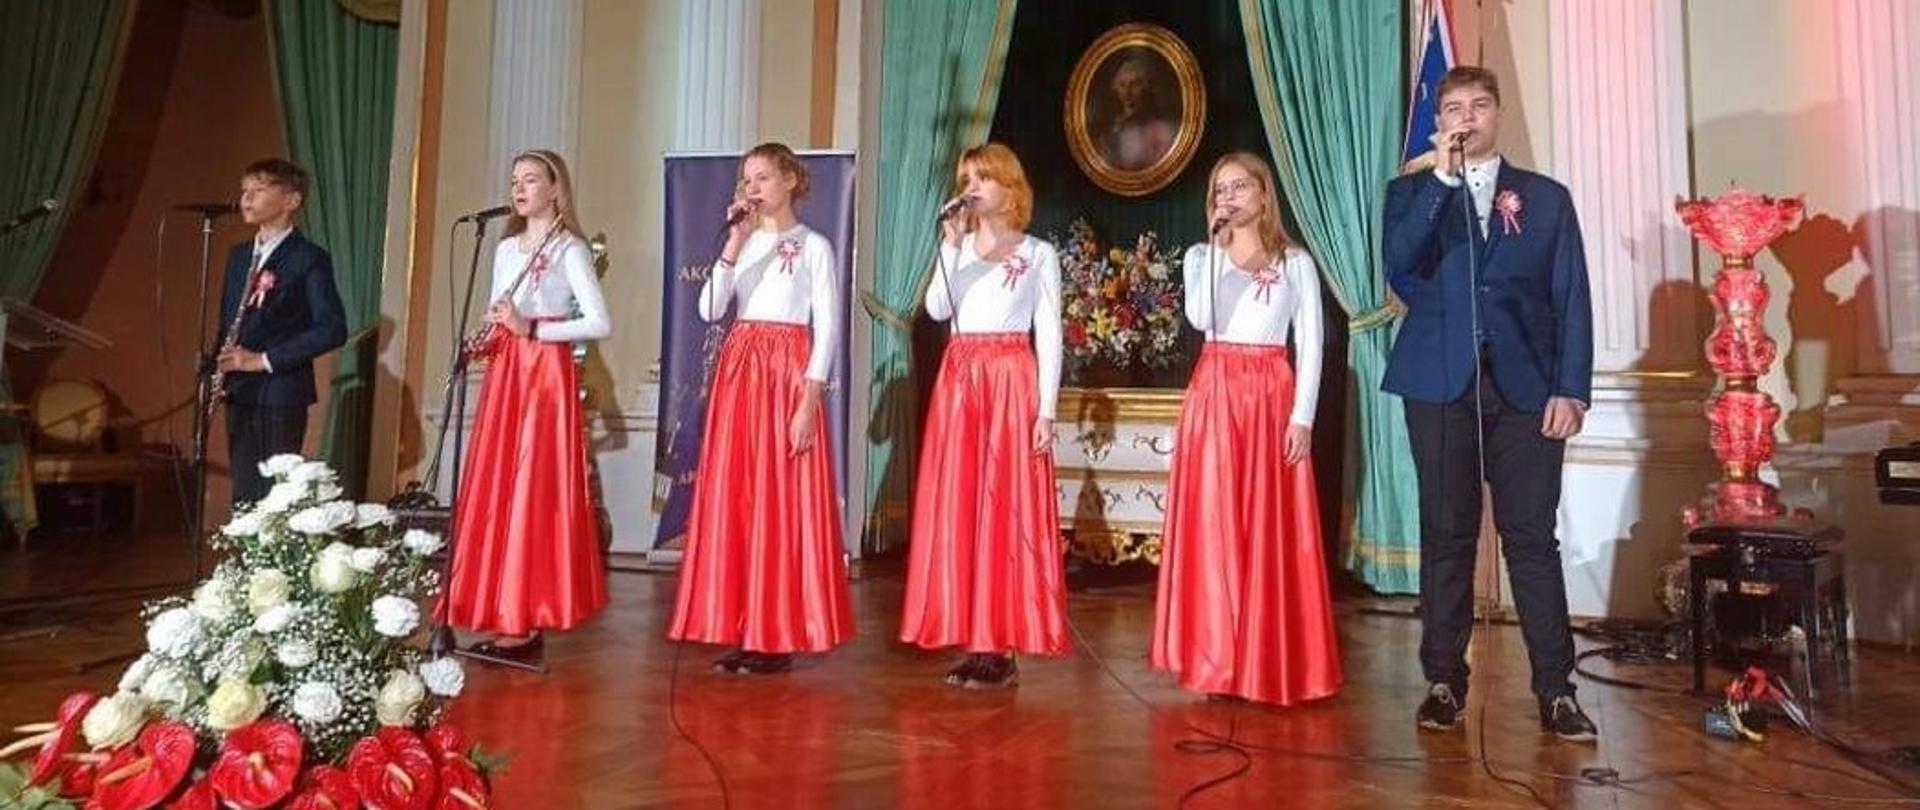 Ogólnopolski Koncert Pieśni Patriotycznej "Śpiewam mojej Ojczyźnie"